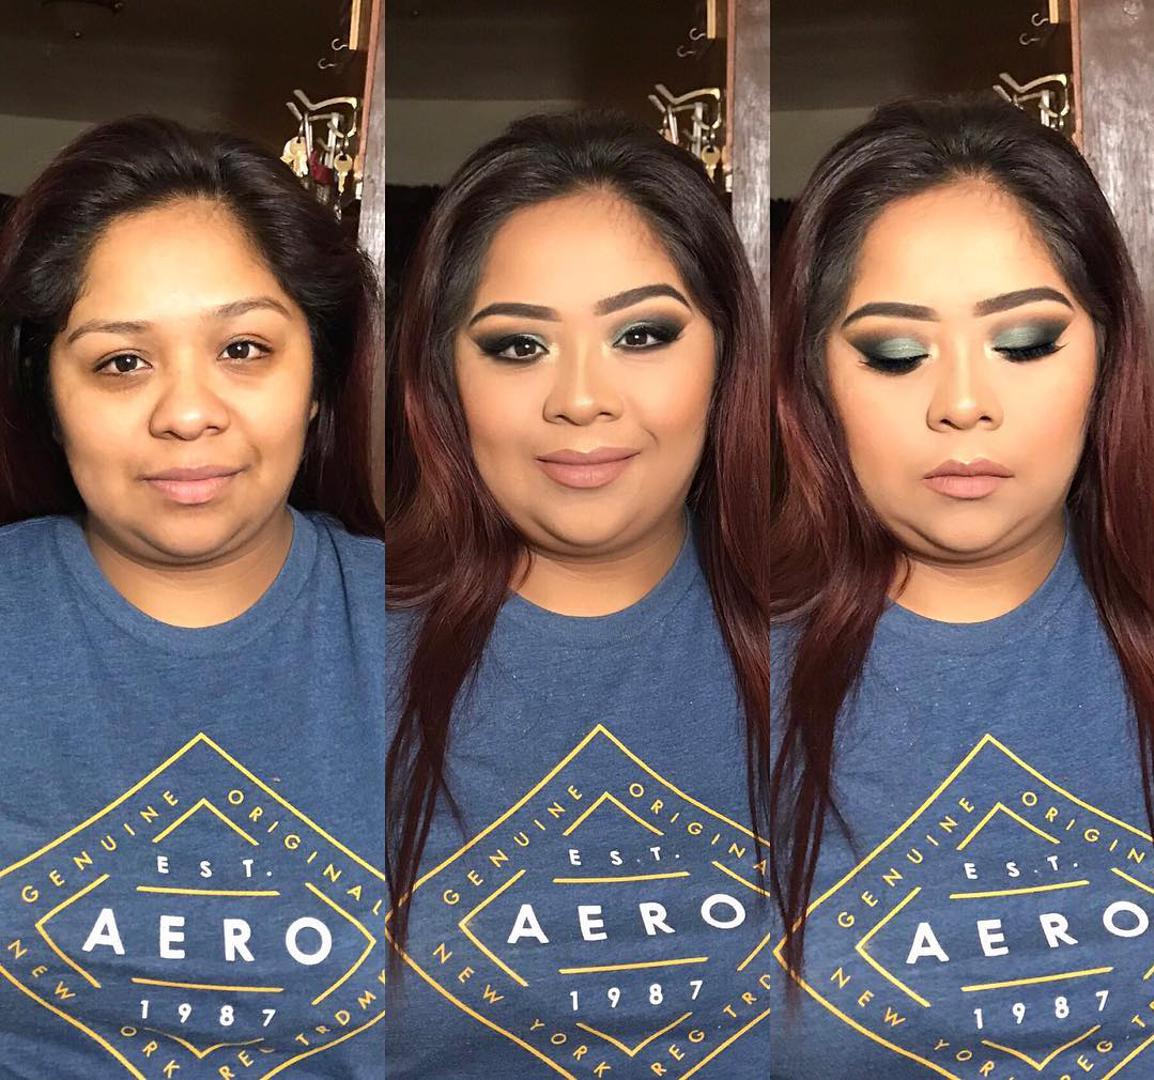 Potražili smo na Instagramu fotografije žena koje su uporabom make up-a napravile nevjerojatne transformacije svog izgleda. Pogledajte...